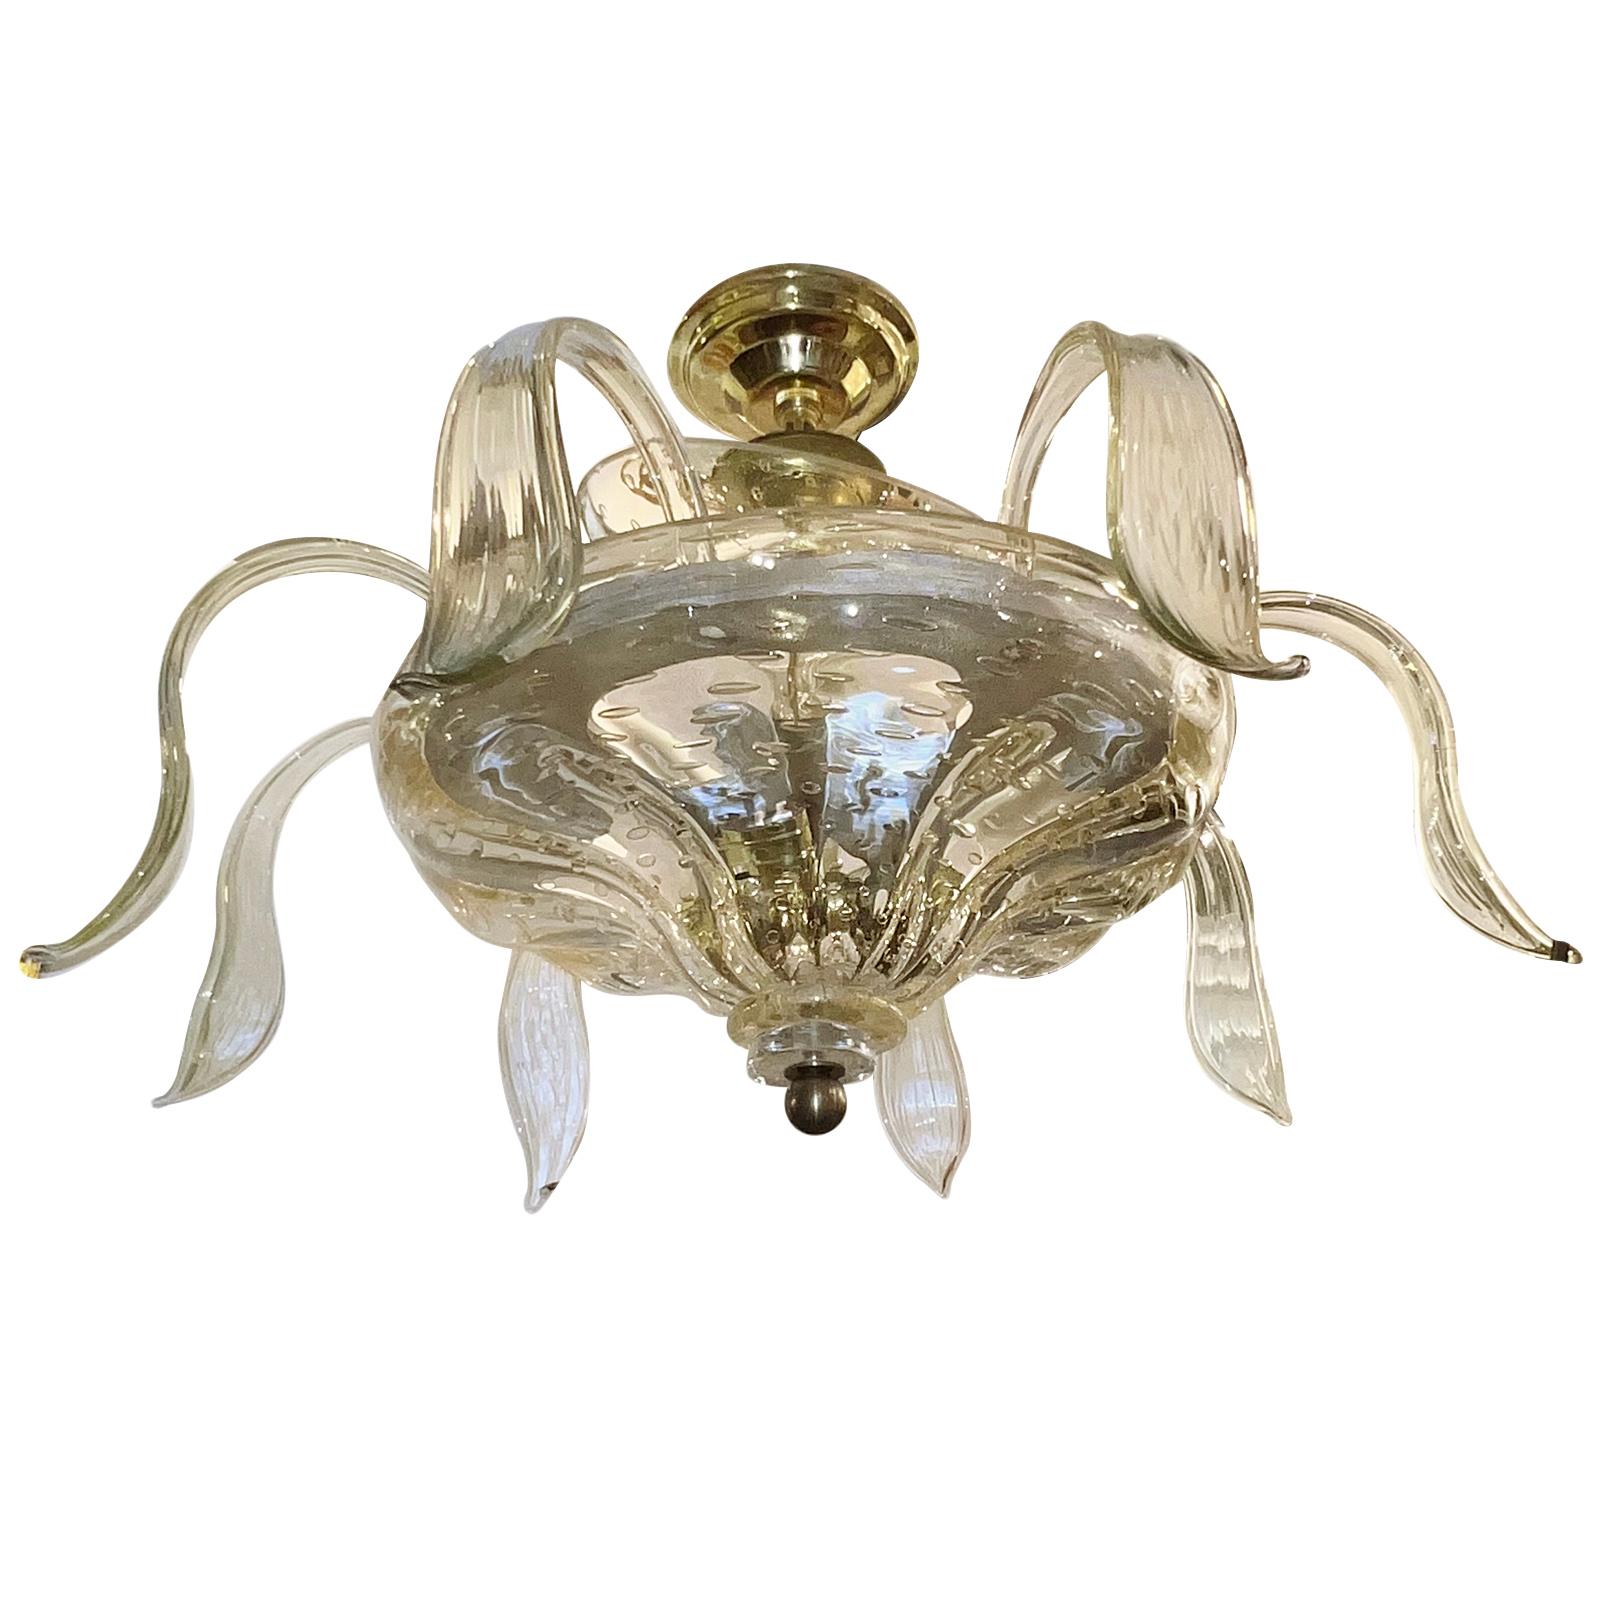 Un lustre italien en verre soufflé datant des années 1960 avec 3 lampes Edison.

Mesures :
Hauteur de la présentation : 17,75